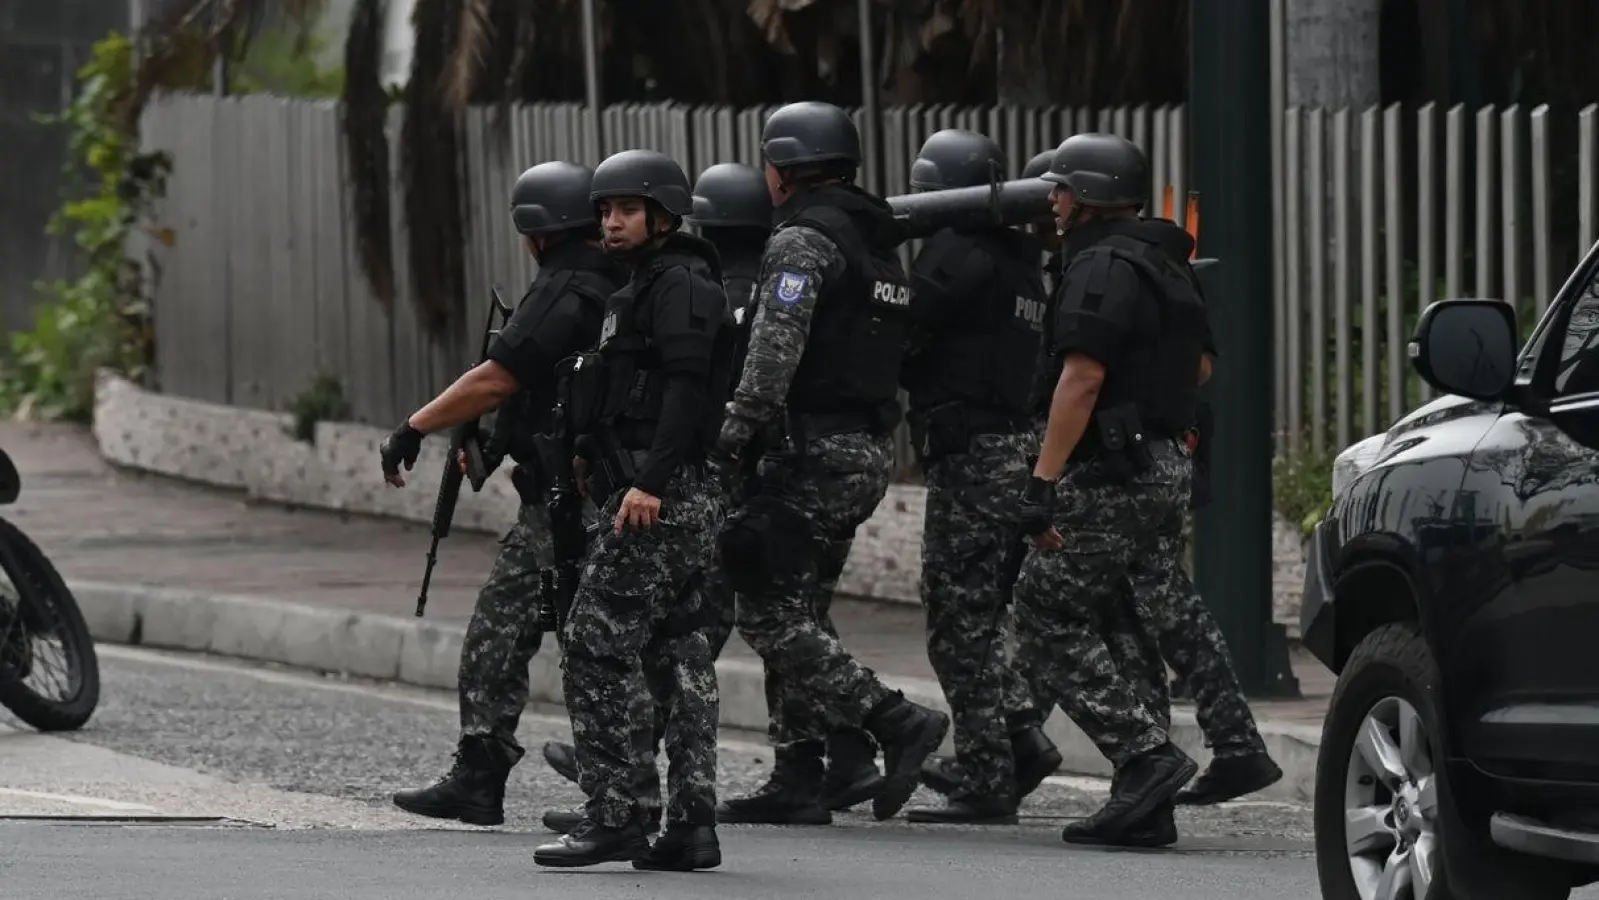 Streitkräfte sind in der Nähe des Fernsehsenders TC Televisión im Einsatz, nachdem Bewaffnete während einer Live-Übertragung in die Räumlichkeiten eingedrungen sind. (Foto: Stringer/dpa)